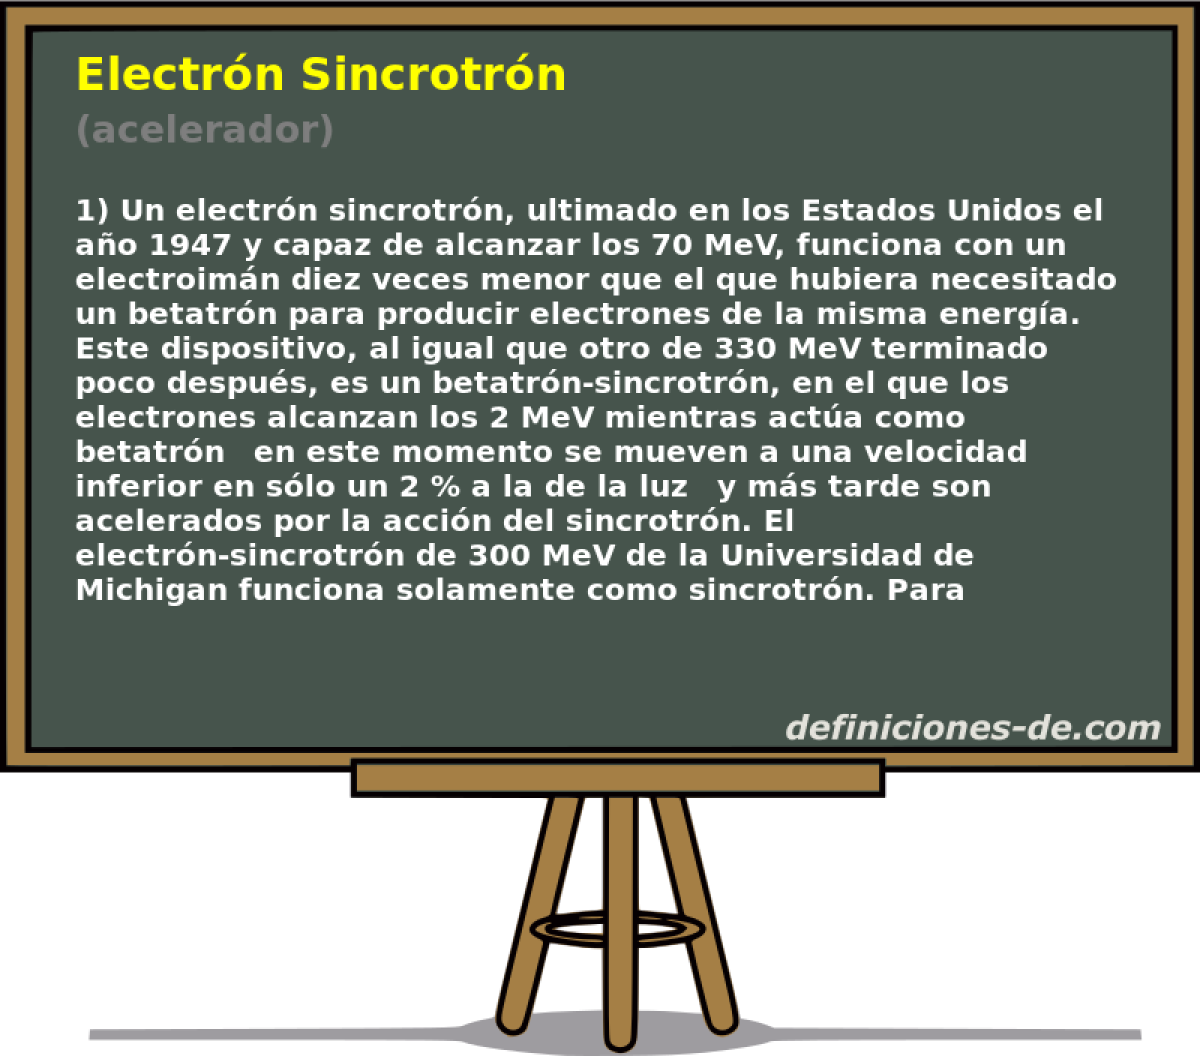 Electrn Sincrotrn (acelerador)